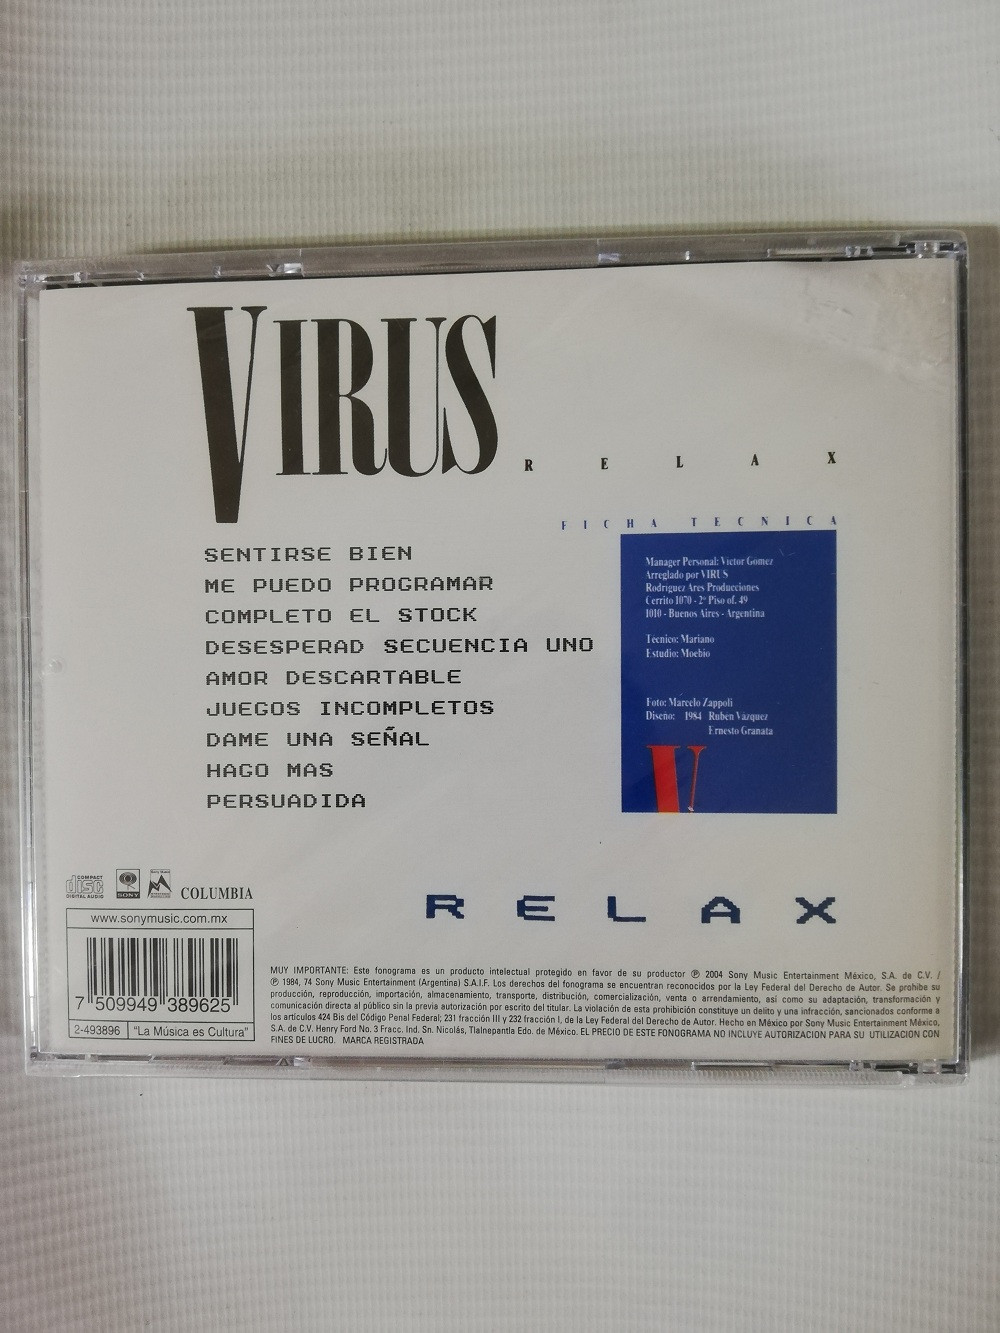 Imagen CD VIRUS - RELAX 2